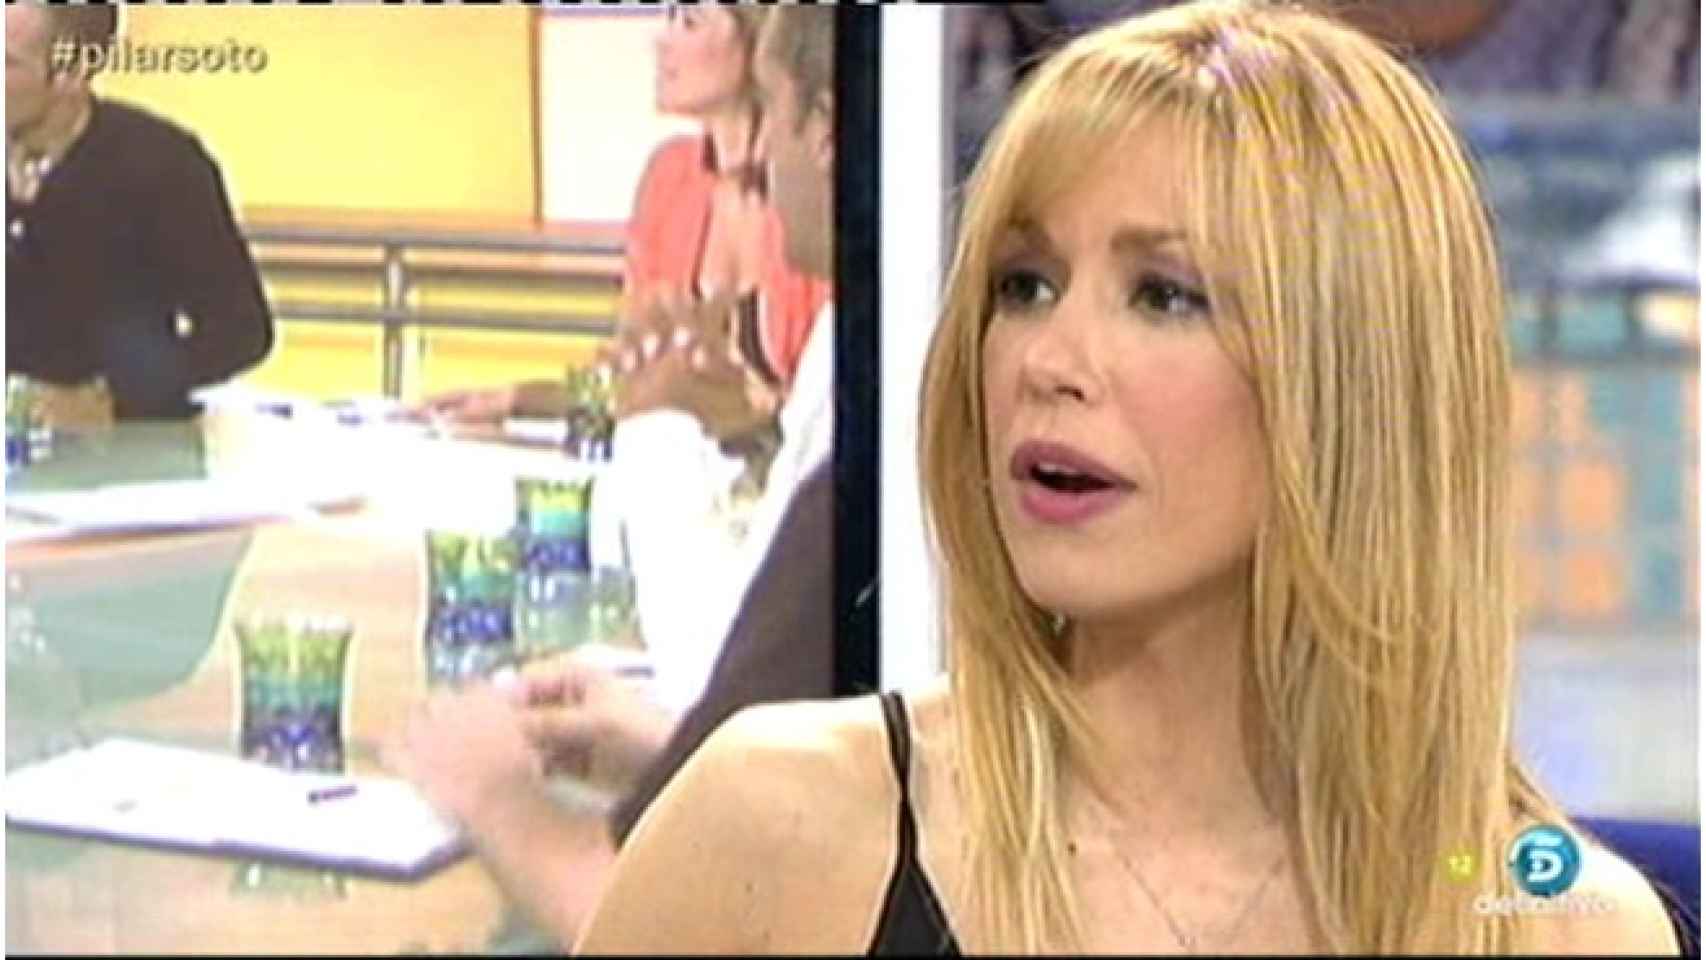 Pilar Soto, expresentadora de televisión